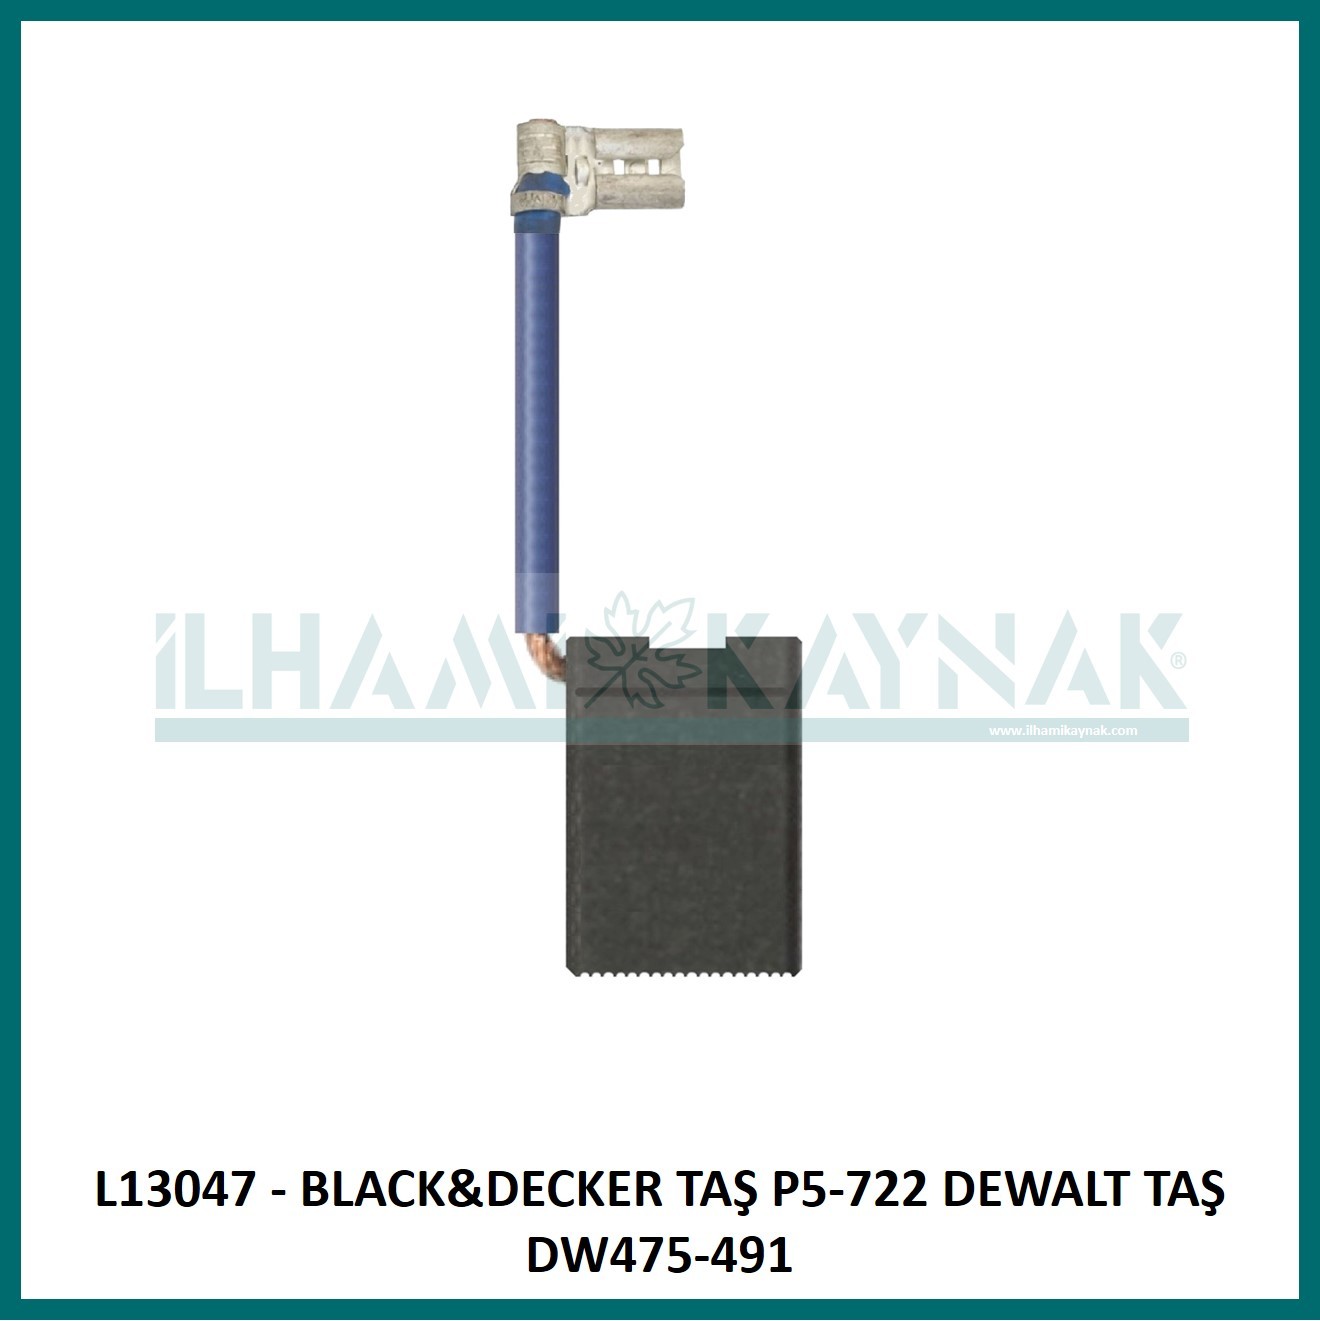 L13047 - BLACK&DECKER TAŞ P5-722 DEWALT TAŞ DW475-491 - 6,3*16*25 mm - Minimum Satın Alım: 10 Adet